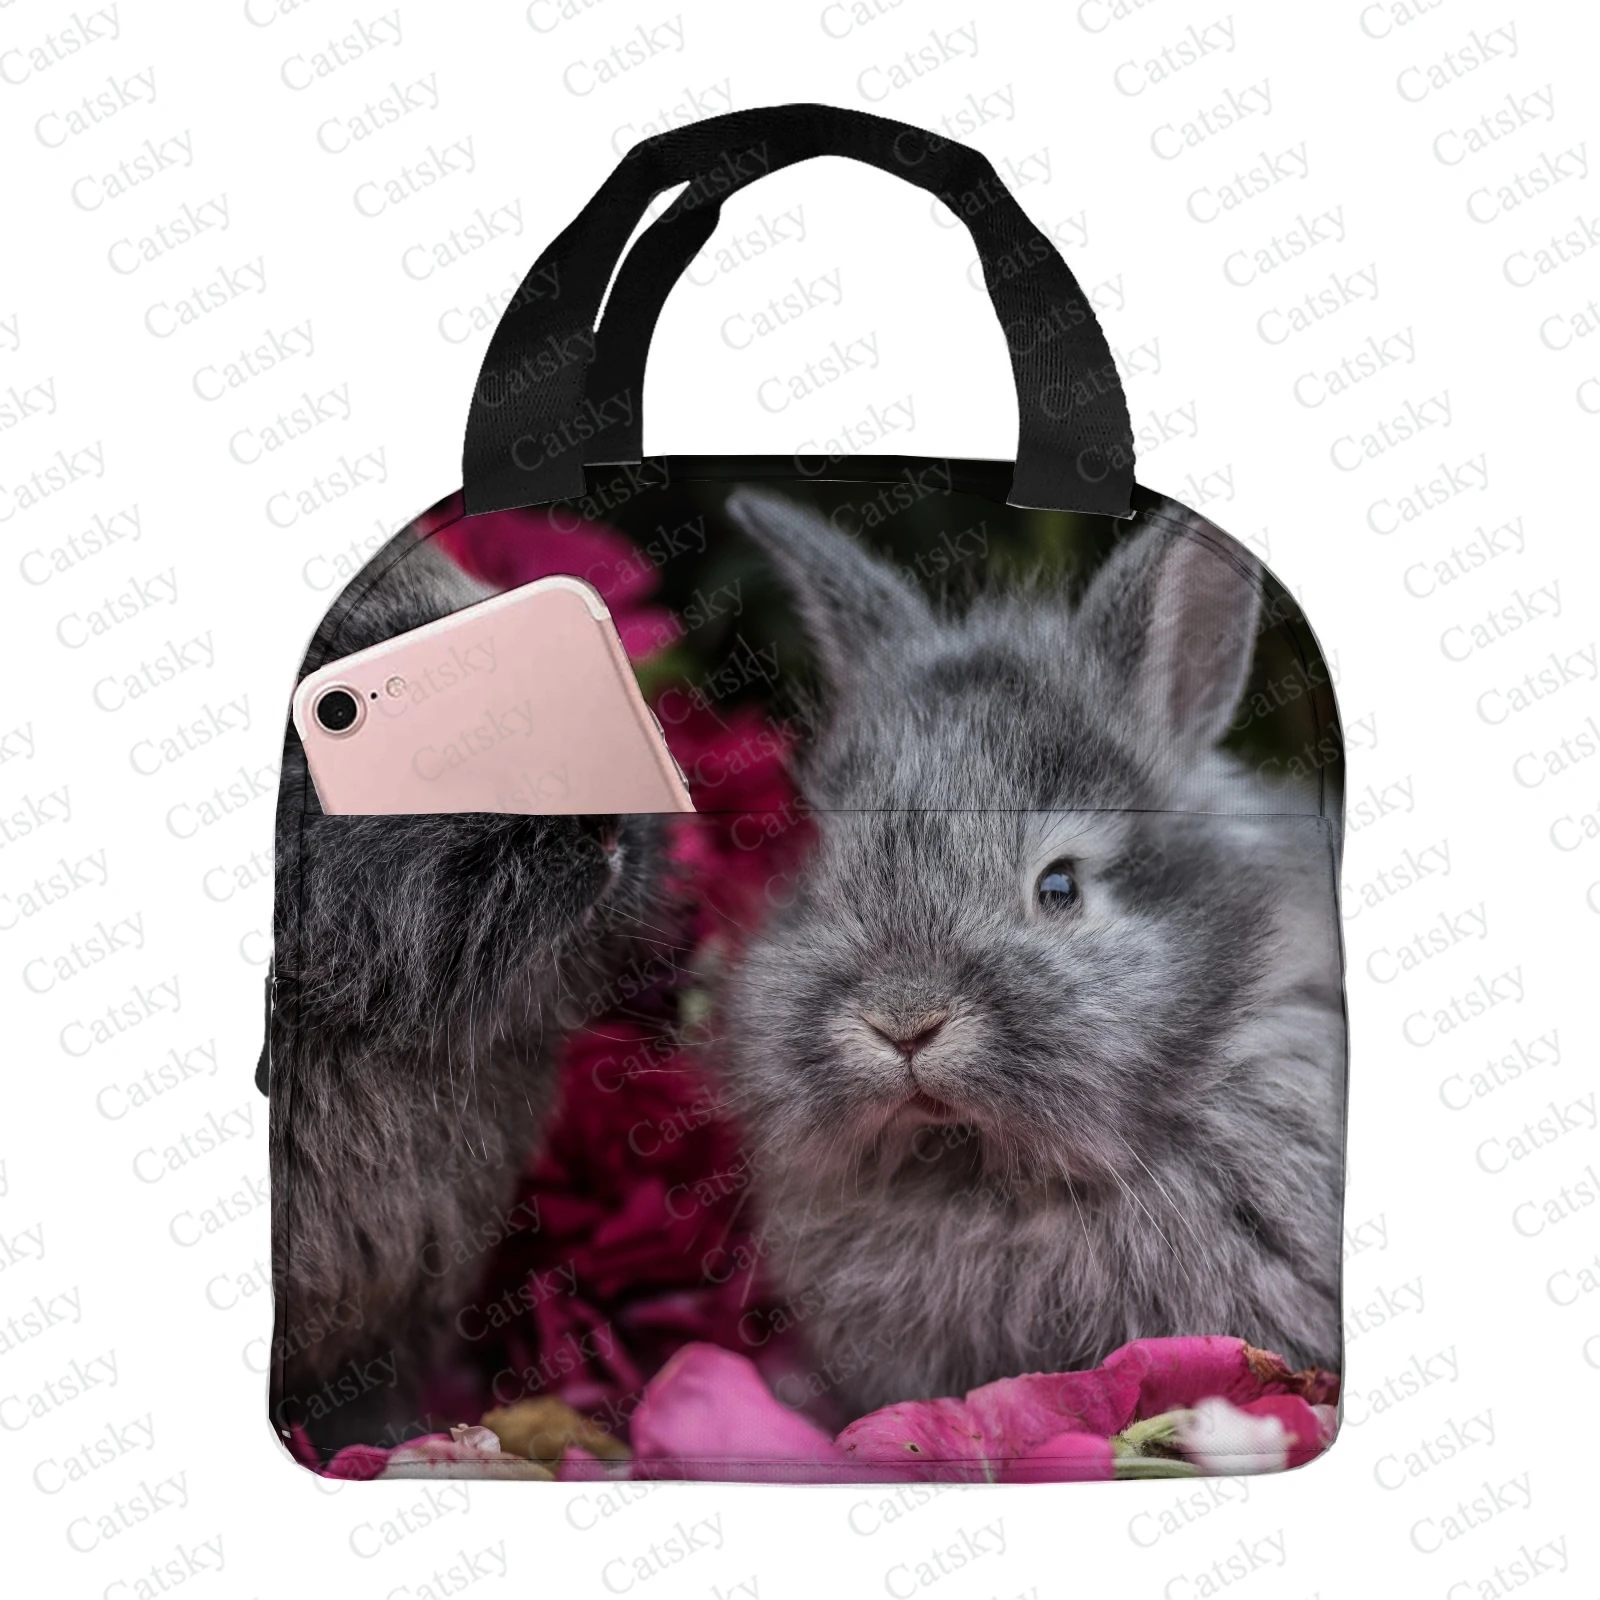 

Переносная утолщенная изолированная сумка для ланча из алюминиевой фольги с изображением кролика и животного, изолированная сумка для ланча, водонепроницаемая изолированная сумка-тоут для ланча